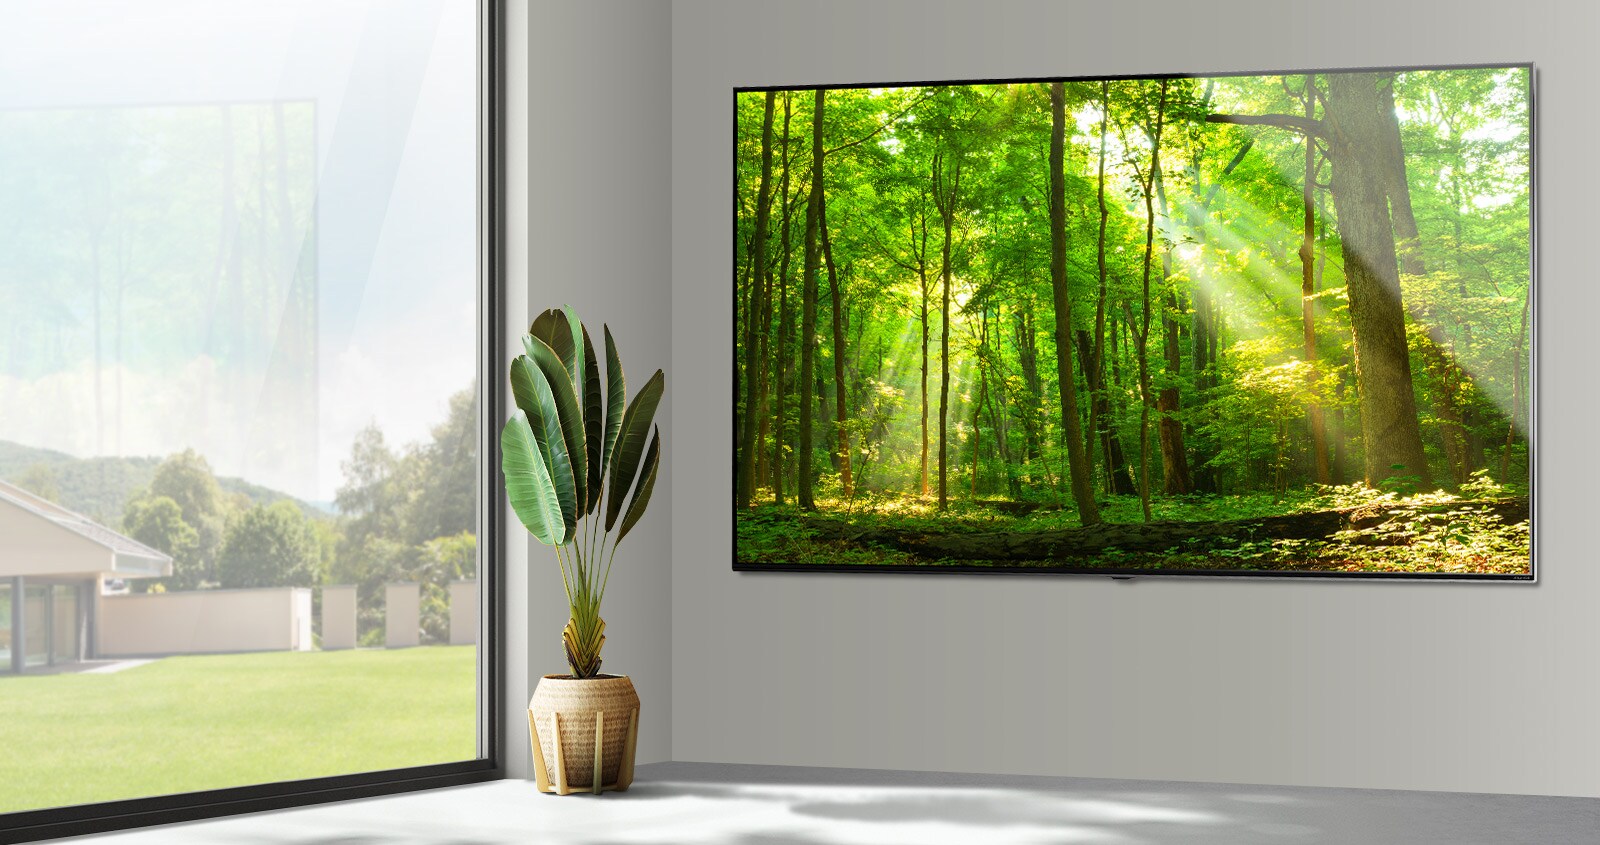 تلفاز بشاشة مسطحة كبيرة مثبتة على جدار رمادي بجوار نافذة كبيرة ممتدة من الأرض حتى السقف.  تُظهر الشاشة مشهدًا في الغابة يتألق فيه الضوء عبر الأشجار. 